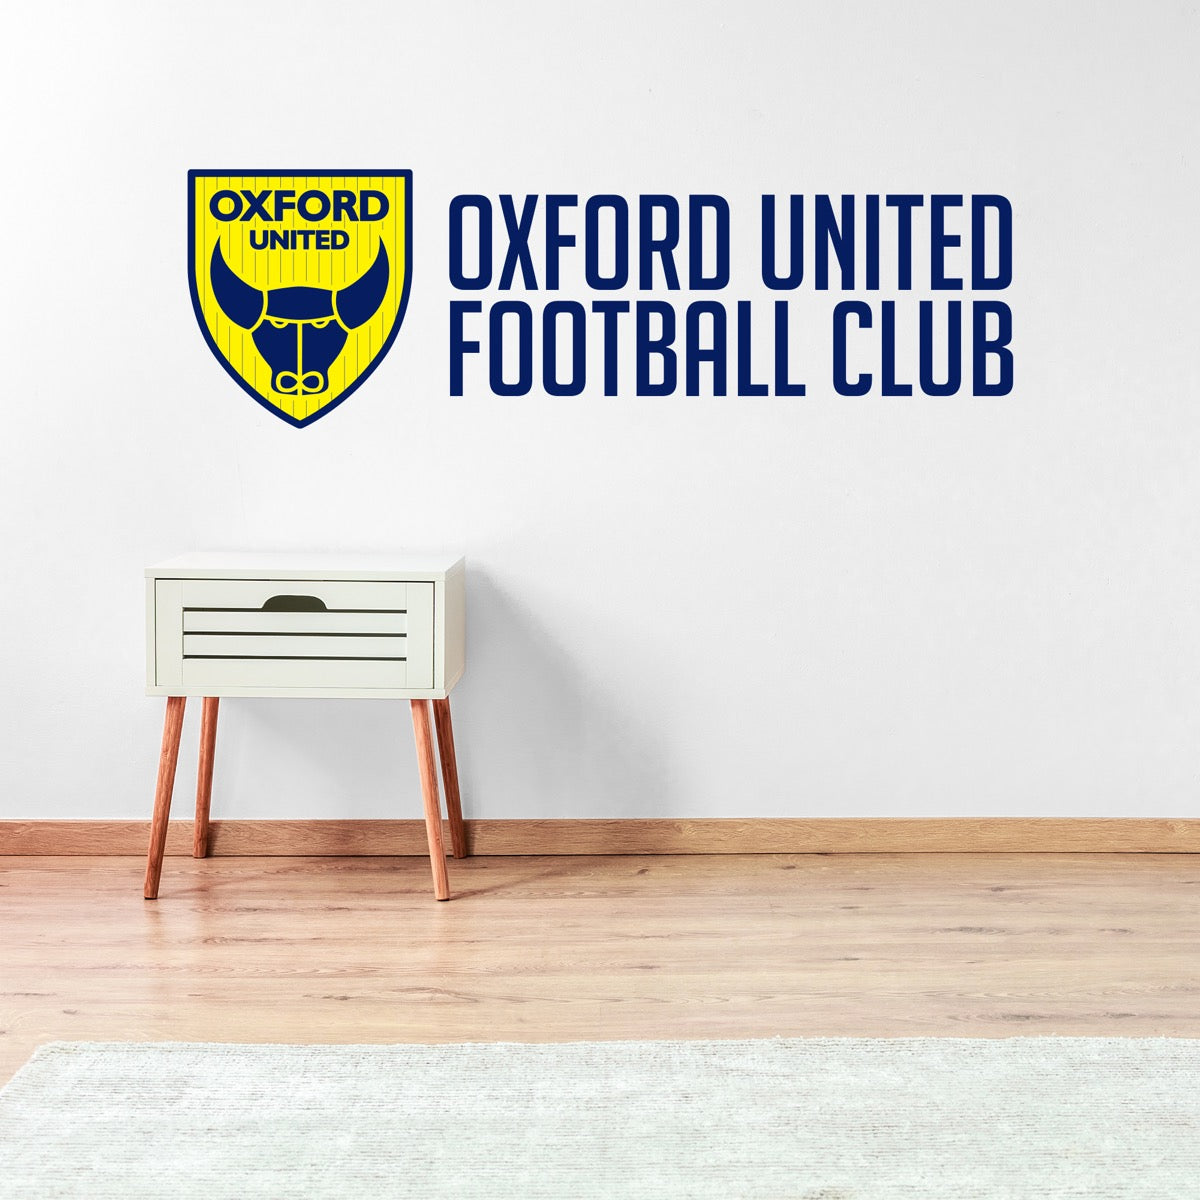 Oxford United Football Club - Crest & Club Name Wall Sticker